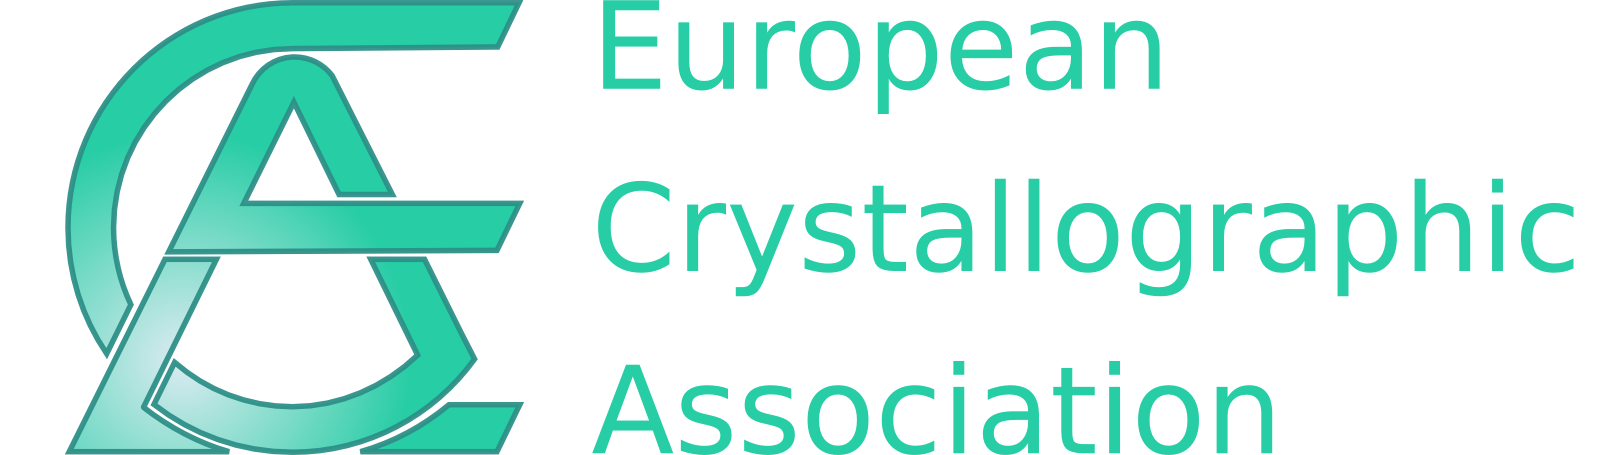 logo_ECA.png